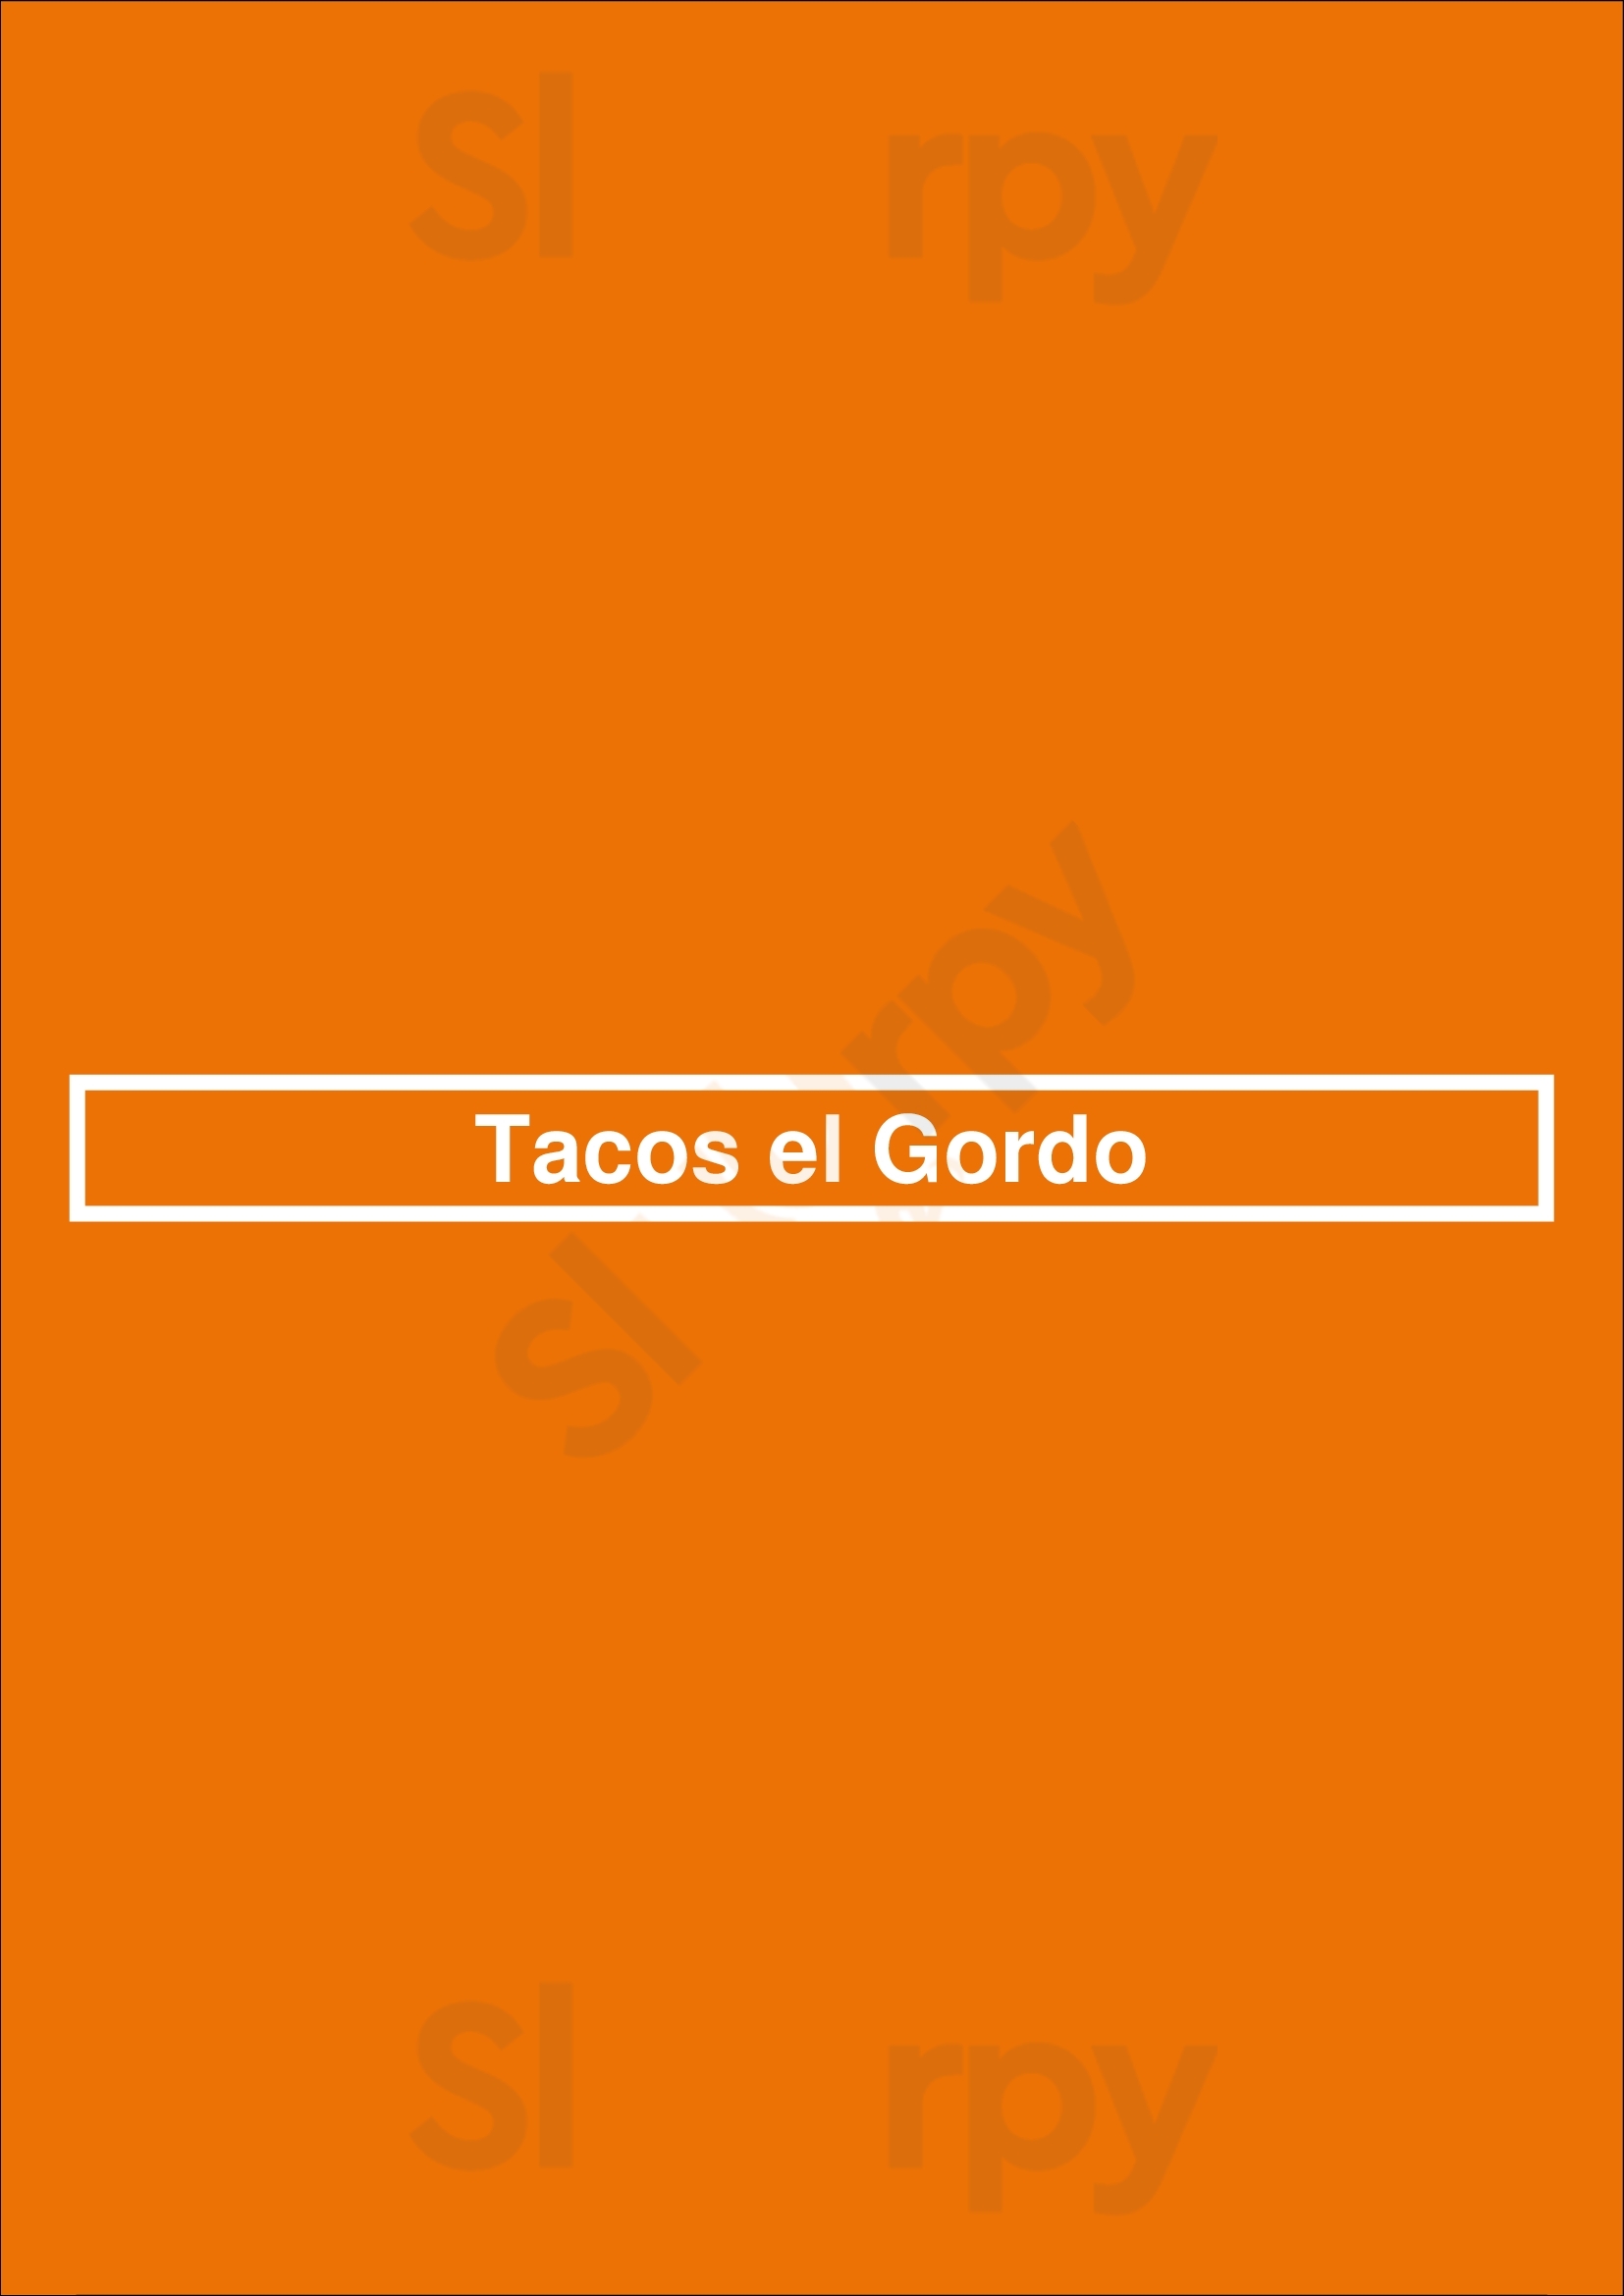 Tacos El Gordo Las Vegas Menu - 1